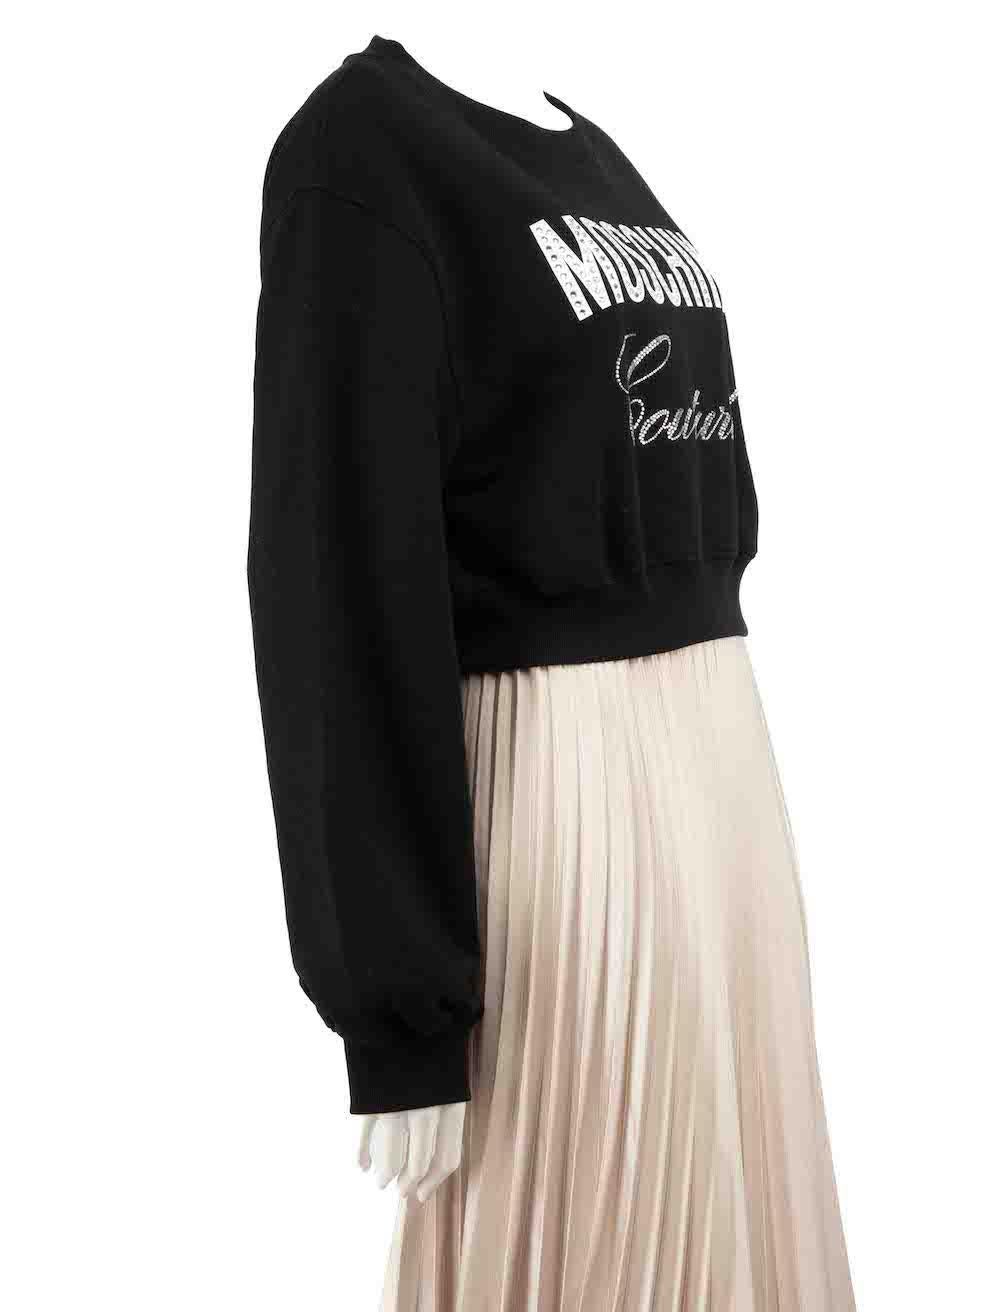 CONDITION ist nie getragen, mit Tags. Dieser neue Moschino Couture! Designer-Wiederverkaufsartikel weist keine sichtbaren Abnutzungserscheinungen am Pullover auf.
 
 Einzelheiten
 Schwarz
 Baumwolle
 Sweatshirt
 Mit Strass verziertes Logo
 Gekürzte